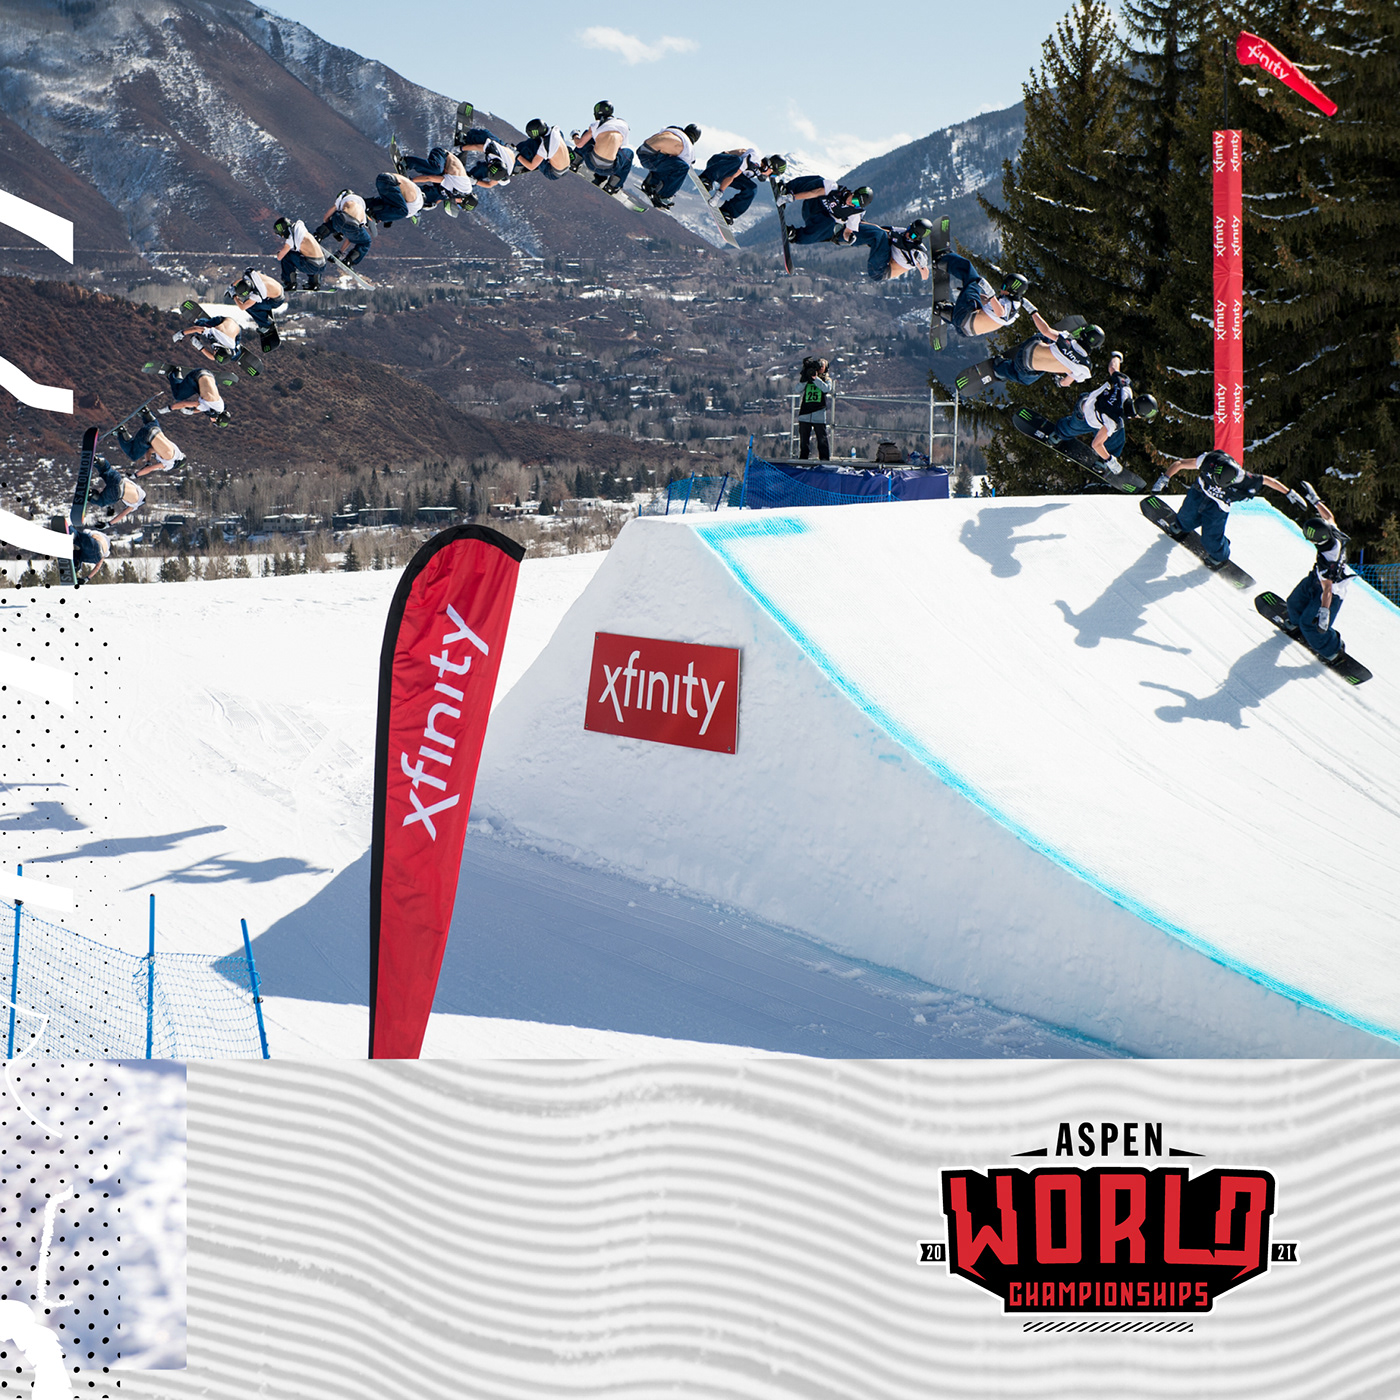 aspen champs fis freeski Ski snowboard world world championship World Champs